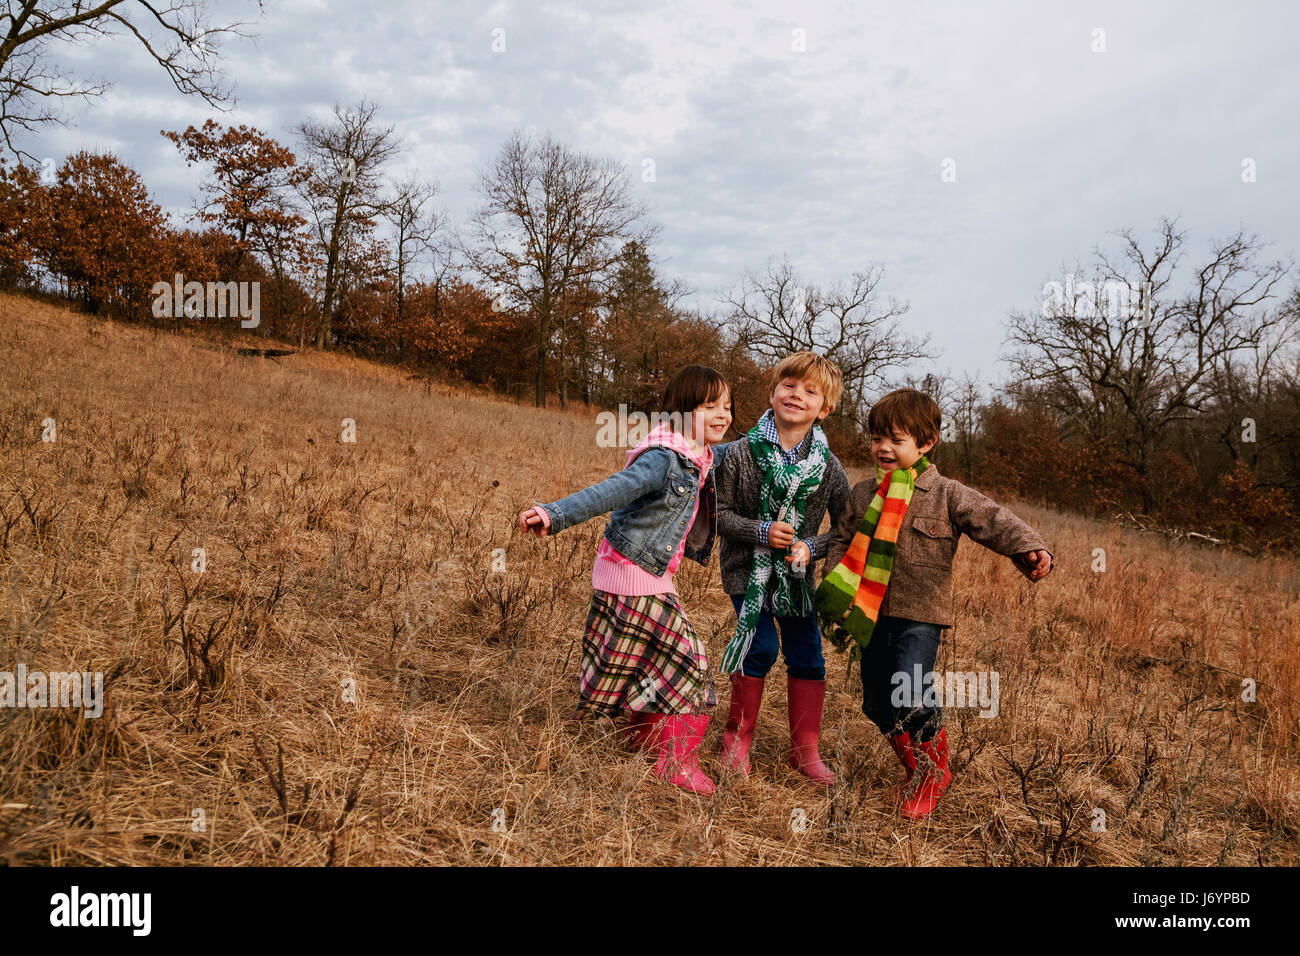 Porträt von drei Kindern in ländlichen Landschaft stehend Stockfoto